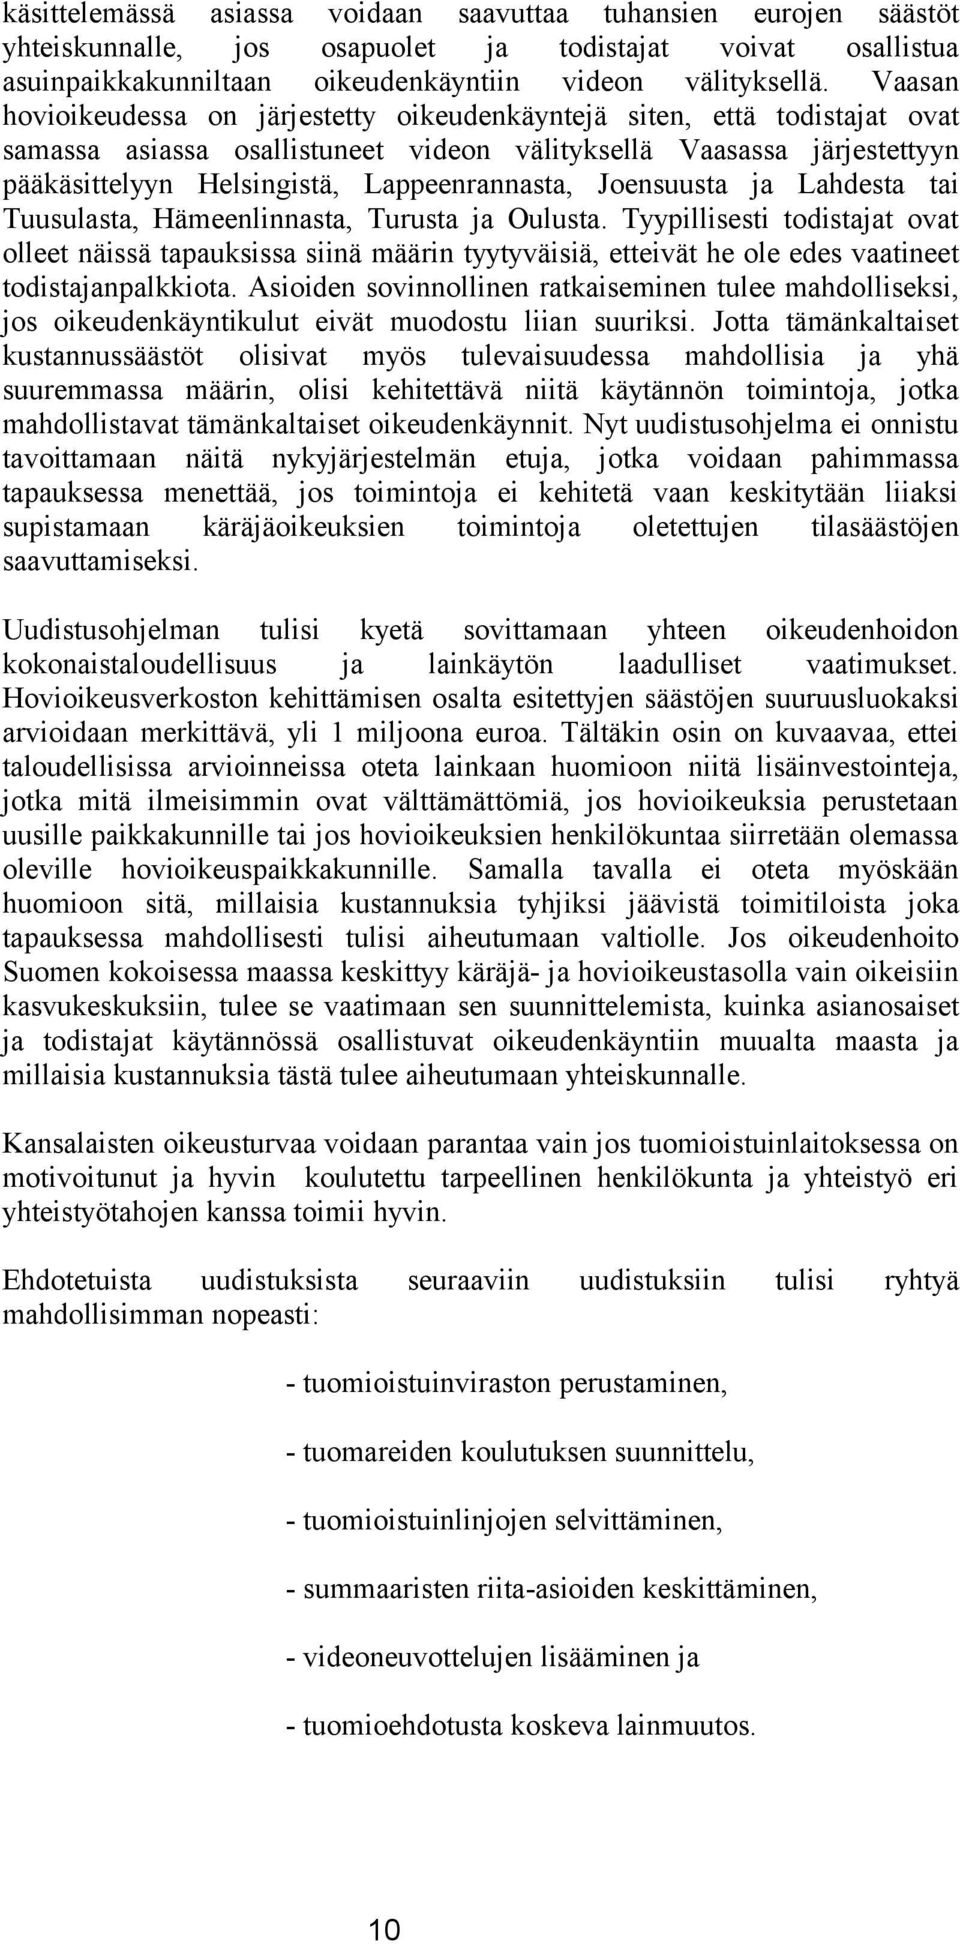 Joensuusta ja Lahdesta tai Tuusulasta, Hämeenlinnasta, Turusta ja Oulusta.